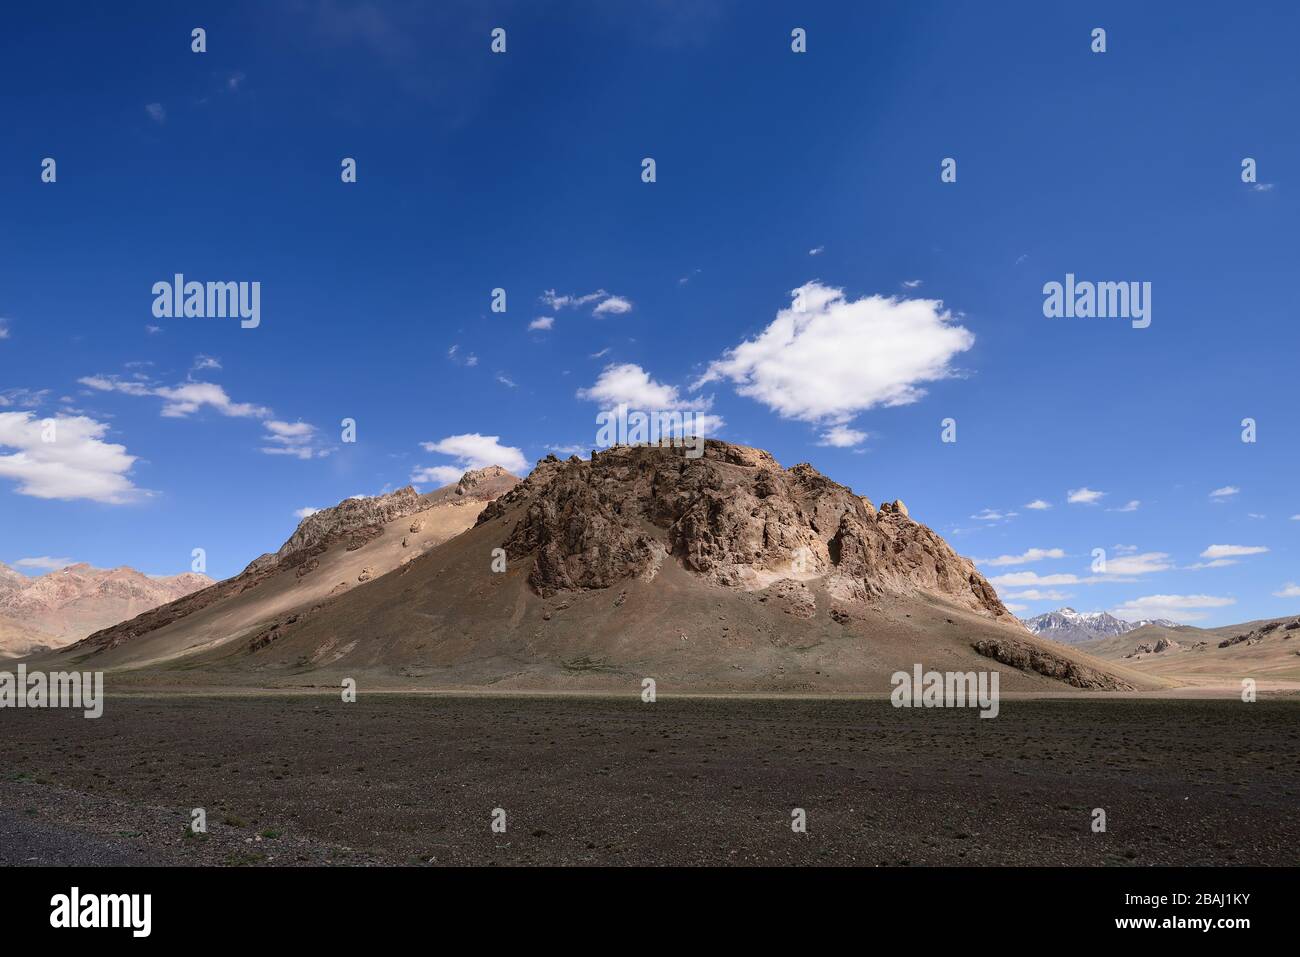 Blick vom Pamir-Highway, zweithöchste Straße der Welt, Pamir-Gebirge, Tadschikistan, Zentralasien-Seidenstraße, endlos, Landschaft, Straße, blau, r Stockfoto